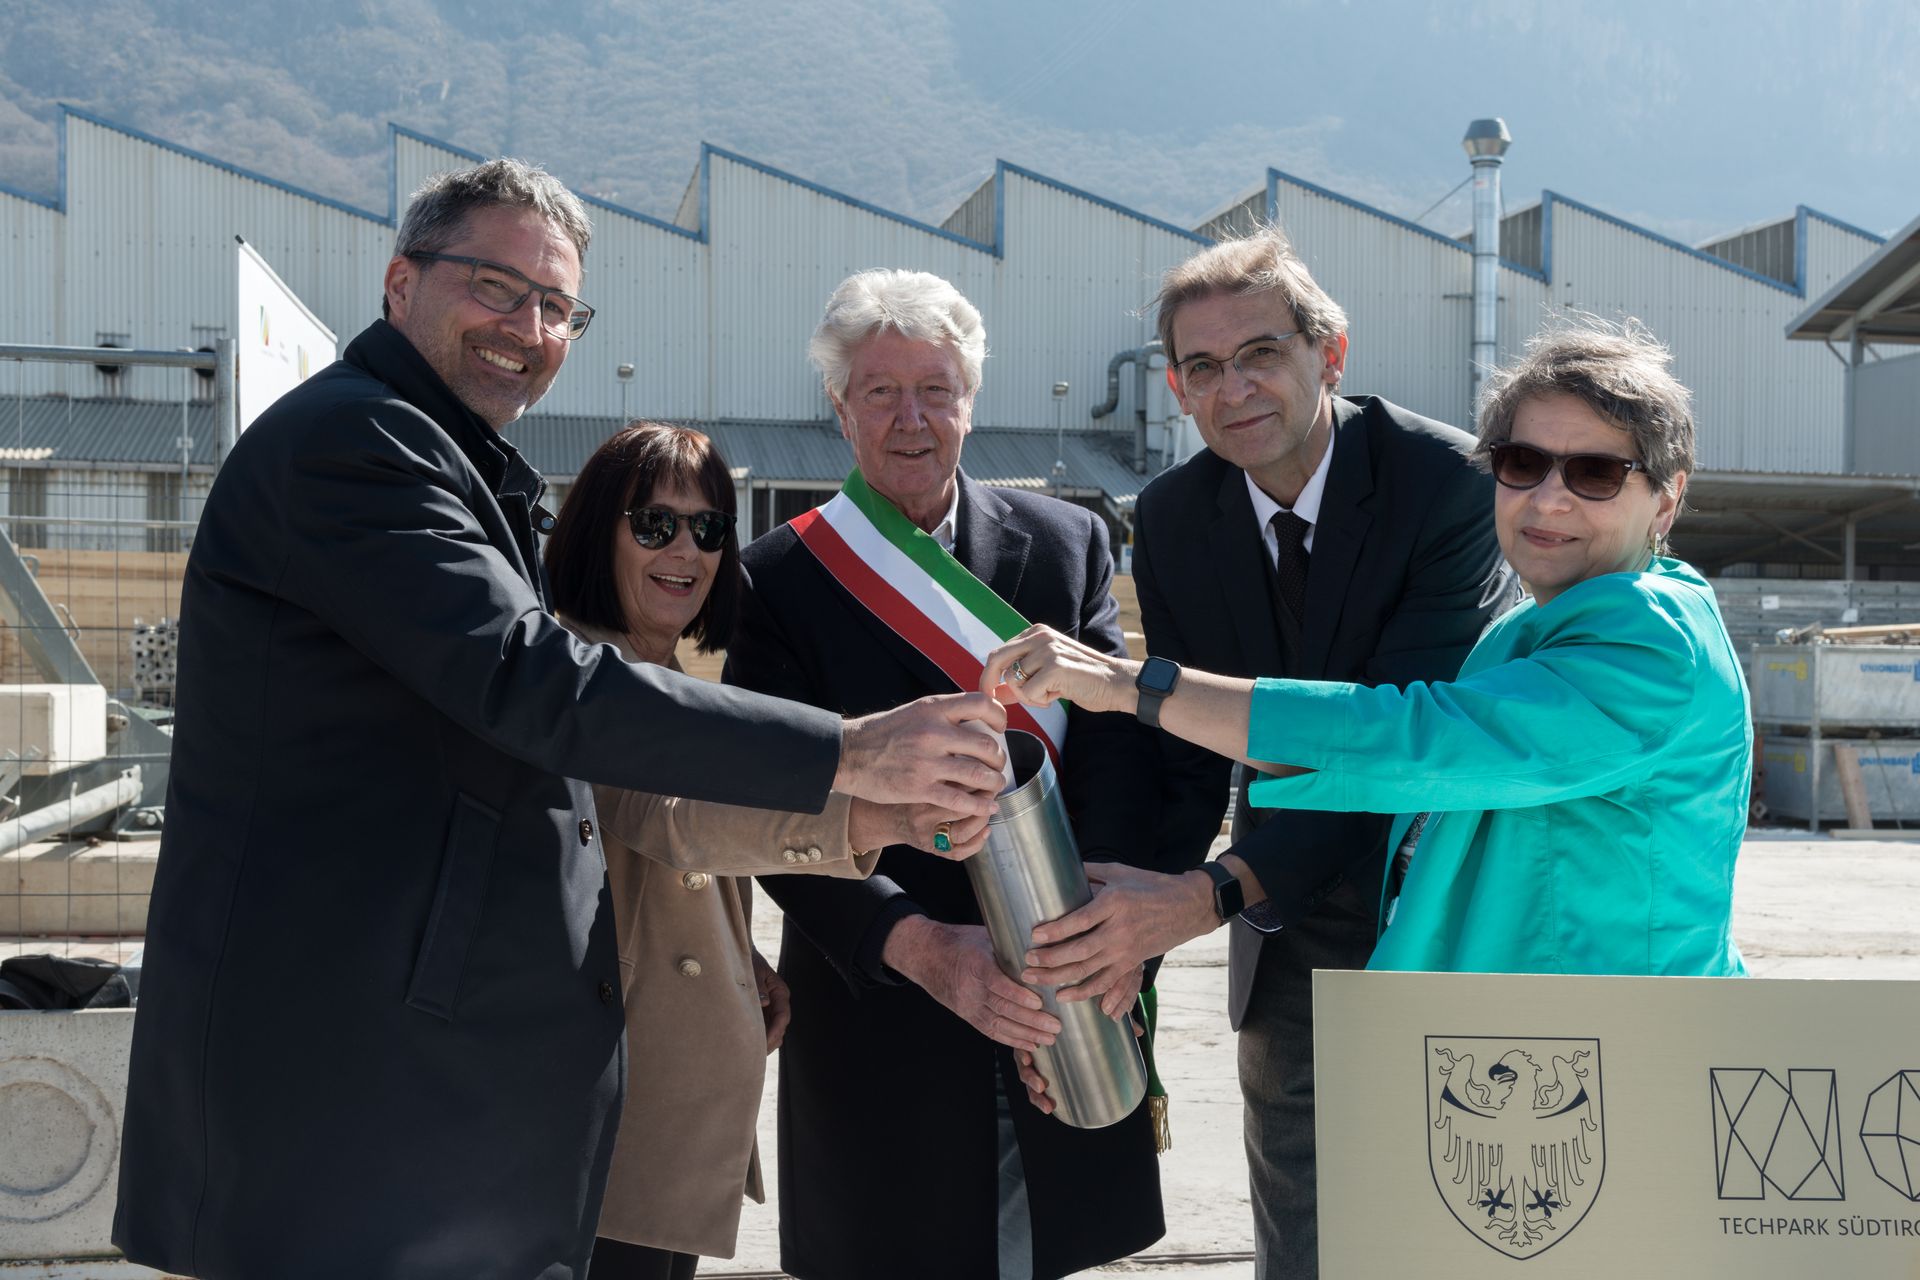 La "pose de la première pierre" de la future faculté d'ingénierie de l'Université libre de Bolzano a été célébrée le 23 mars au NOI Techpark, avec laquelle le district d'innovation du Haut-Adige/Südtirol se prépare à entrer dans une nouvelle dimension